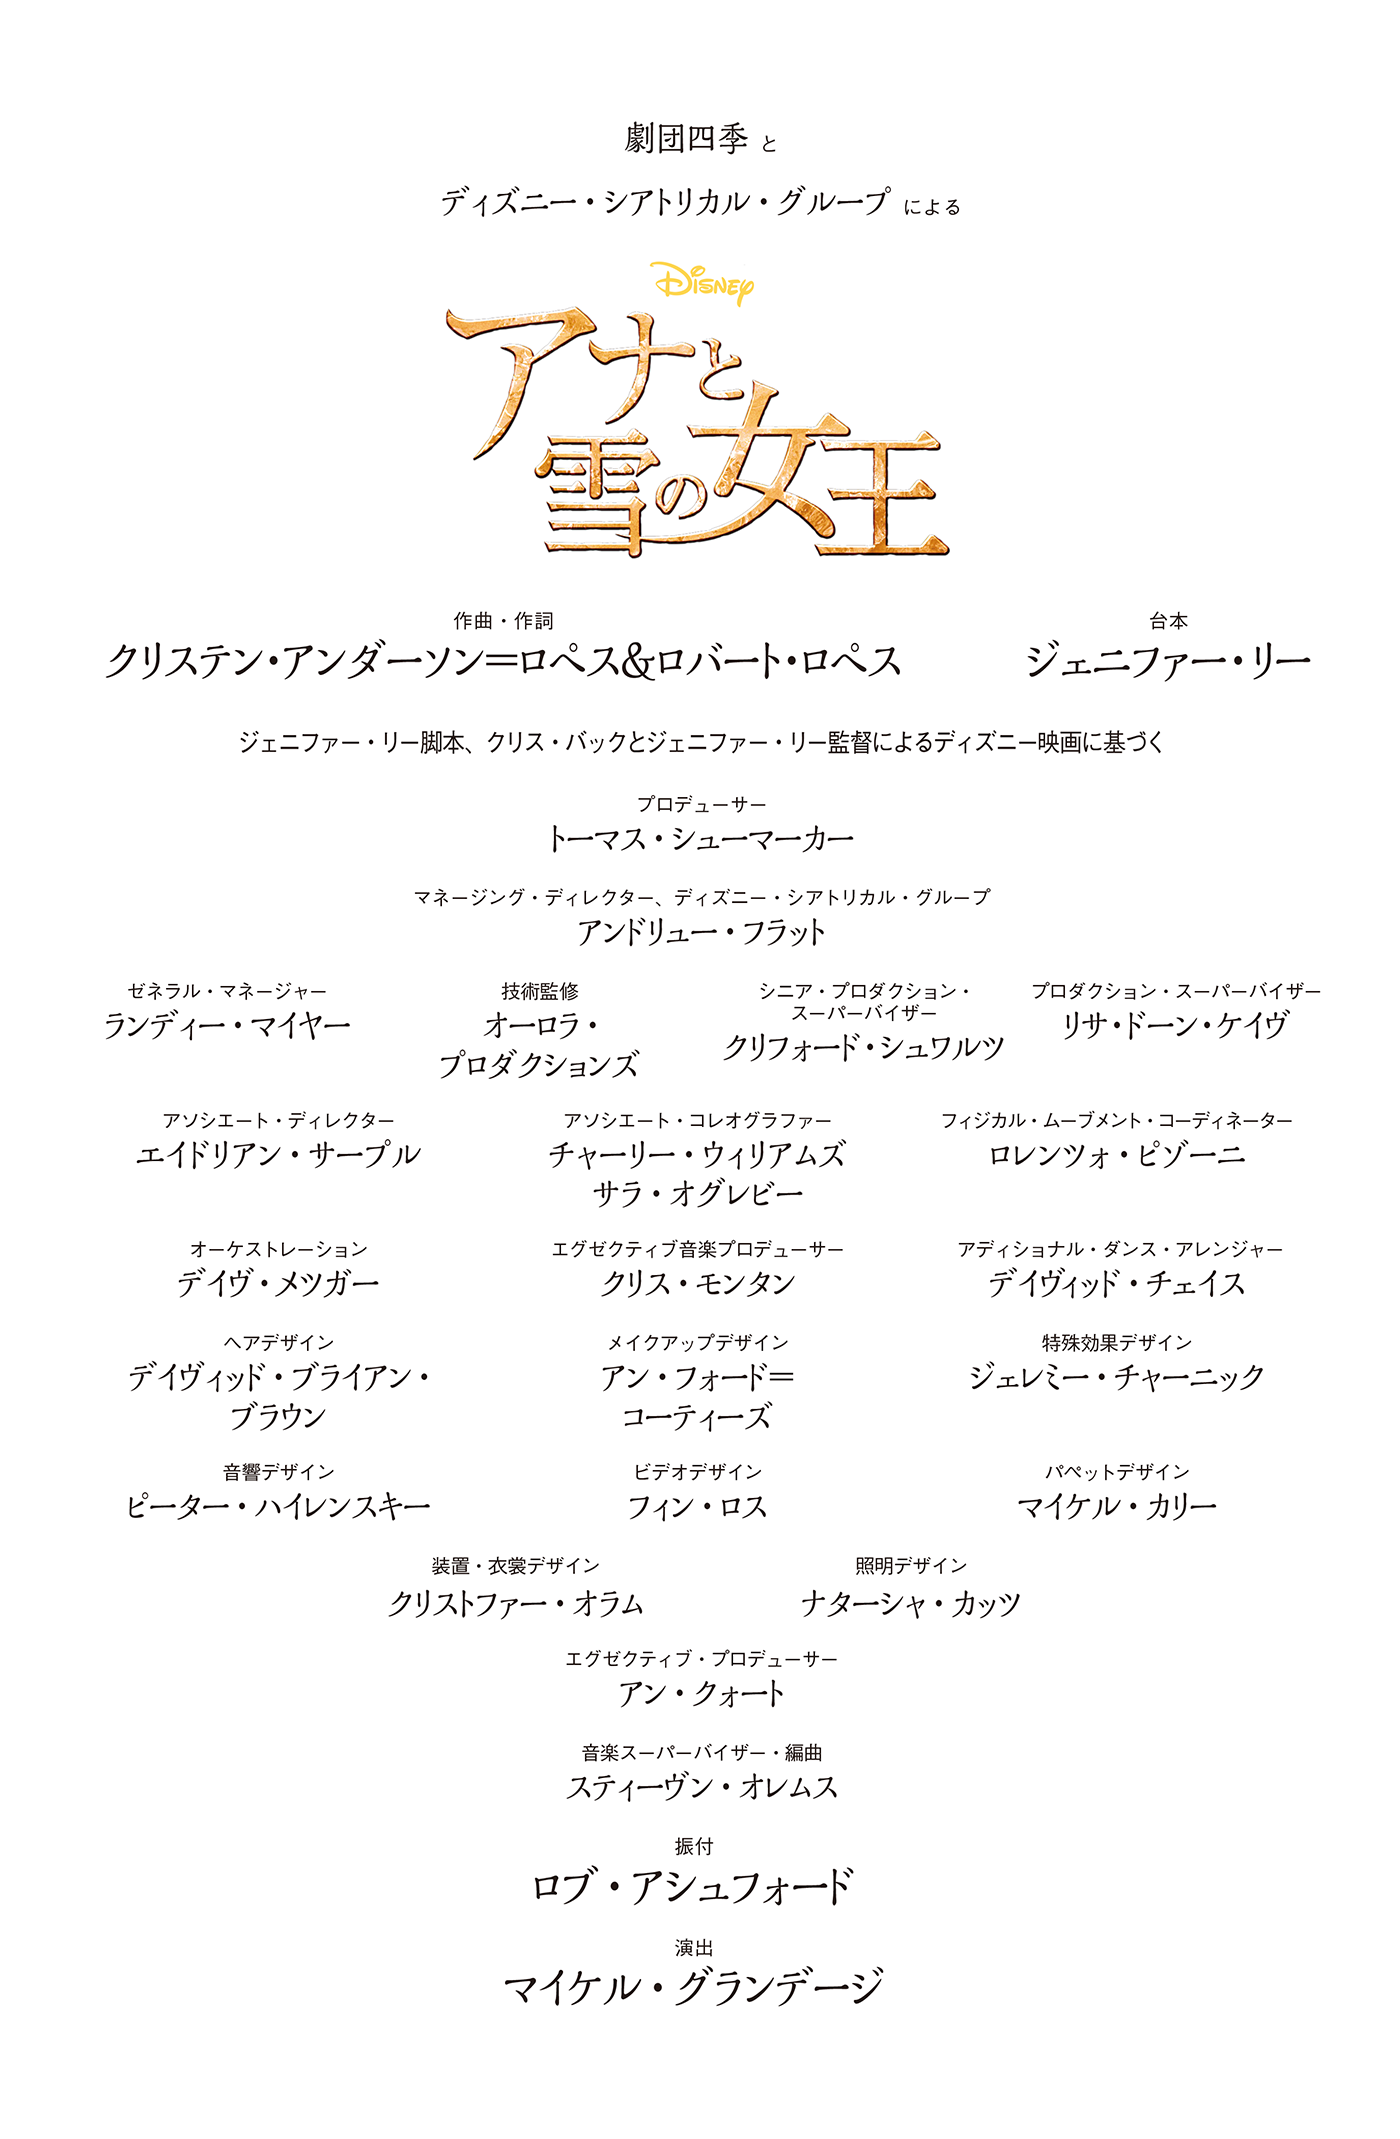 チケット S連席 アナ雪劇団四季 30日 東京 6lOkA-m27477551091 ディズニー